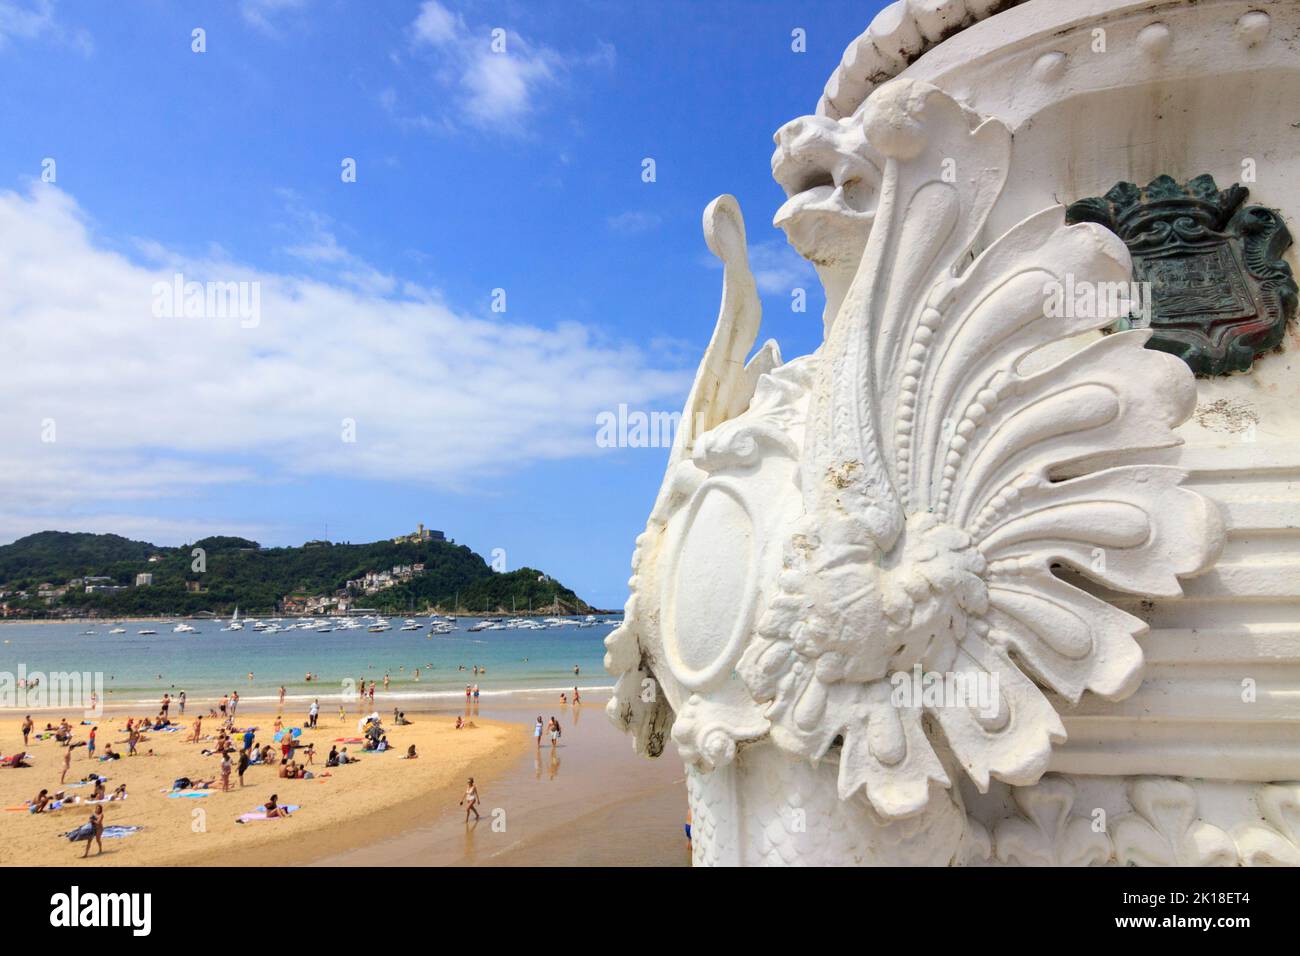 San Sebastian, Baskenland, Spanien : Detail der ikonischen Laternenpfosten an der Promenade entlang des Strandes von La Concha mit Strandbesuchern im Hintergrund. Stockfoto